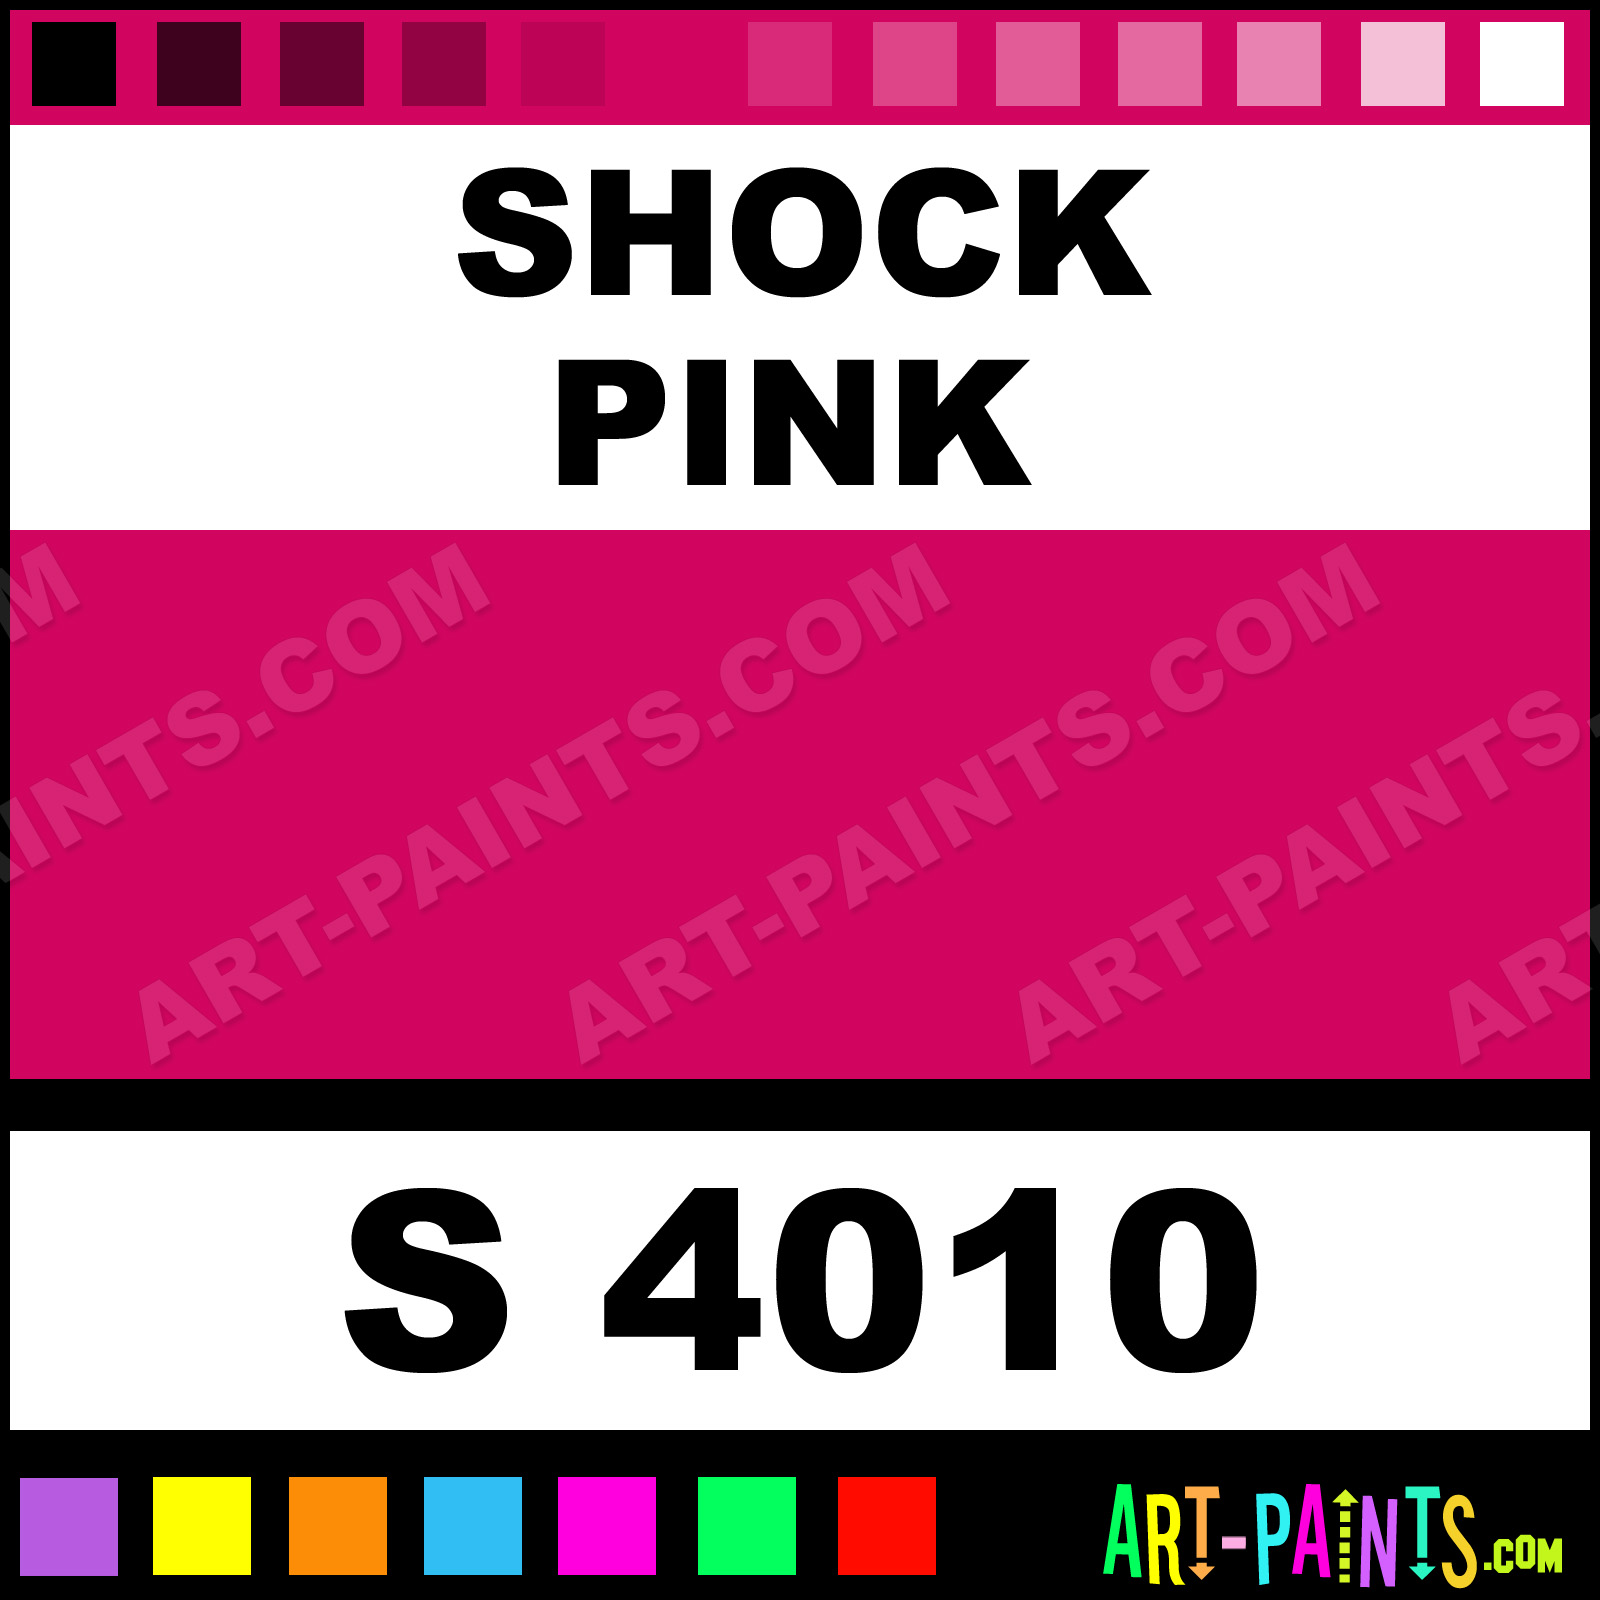 caja de cartón Suplemento Retener Shock Pink Platinum Spray Paints - S 4010 - Shock Pink Paint, Shock Pink  Color, Montana Platinum Aerosol Paint, D1045F - Art-Paints.com